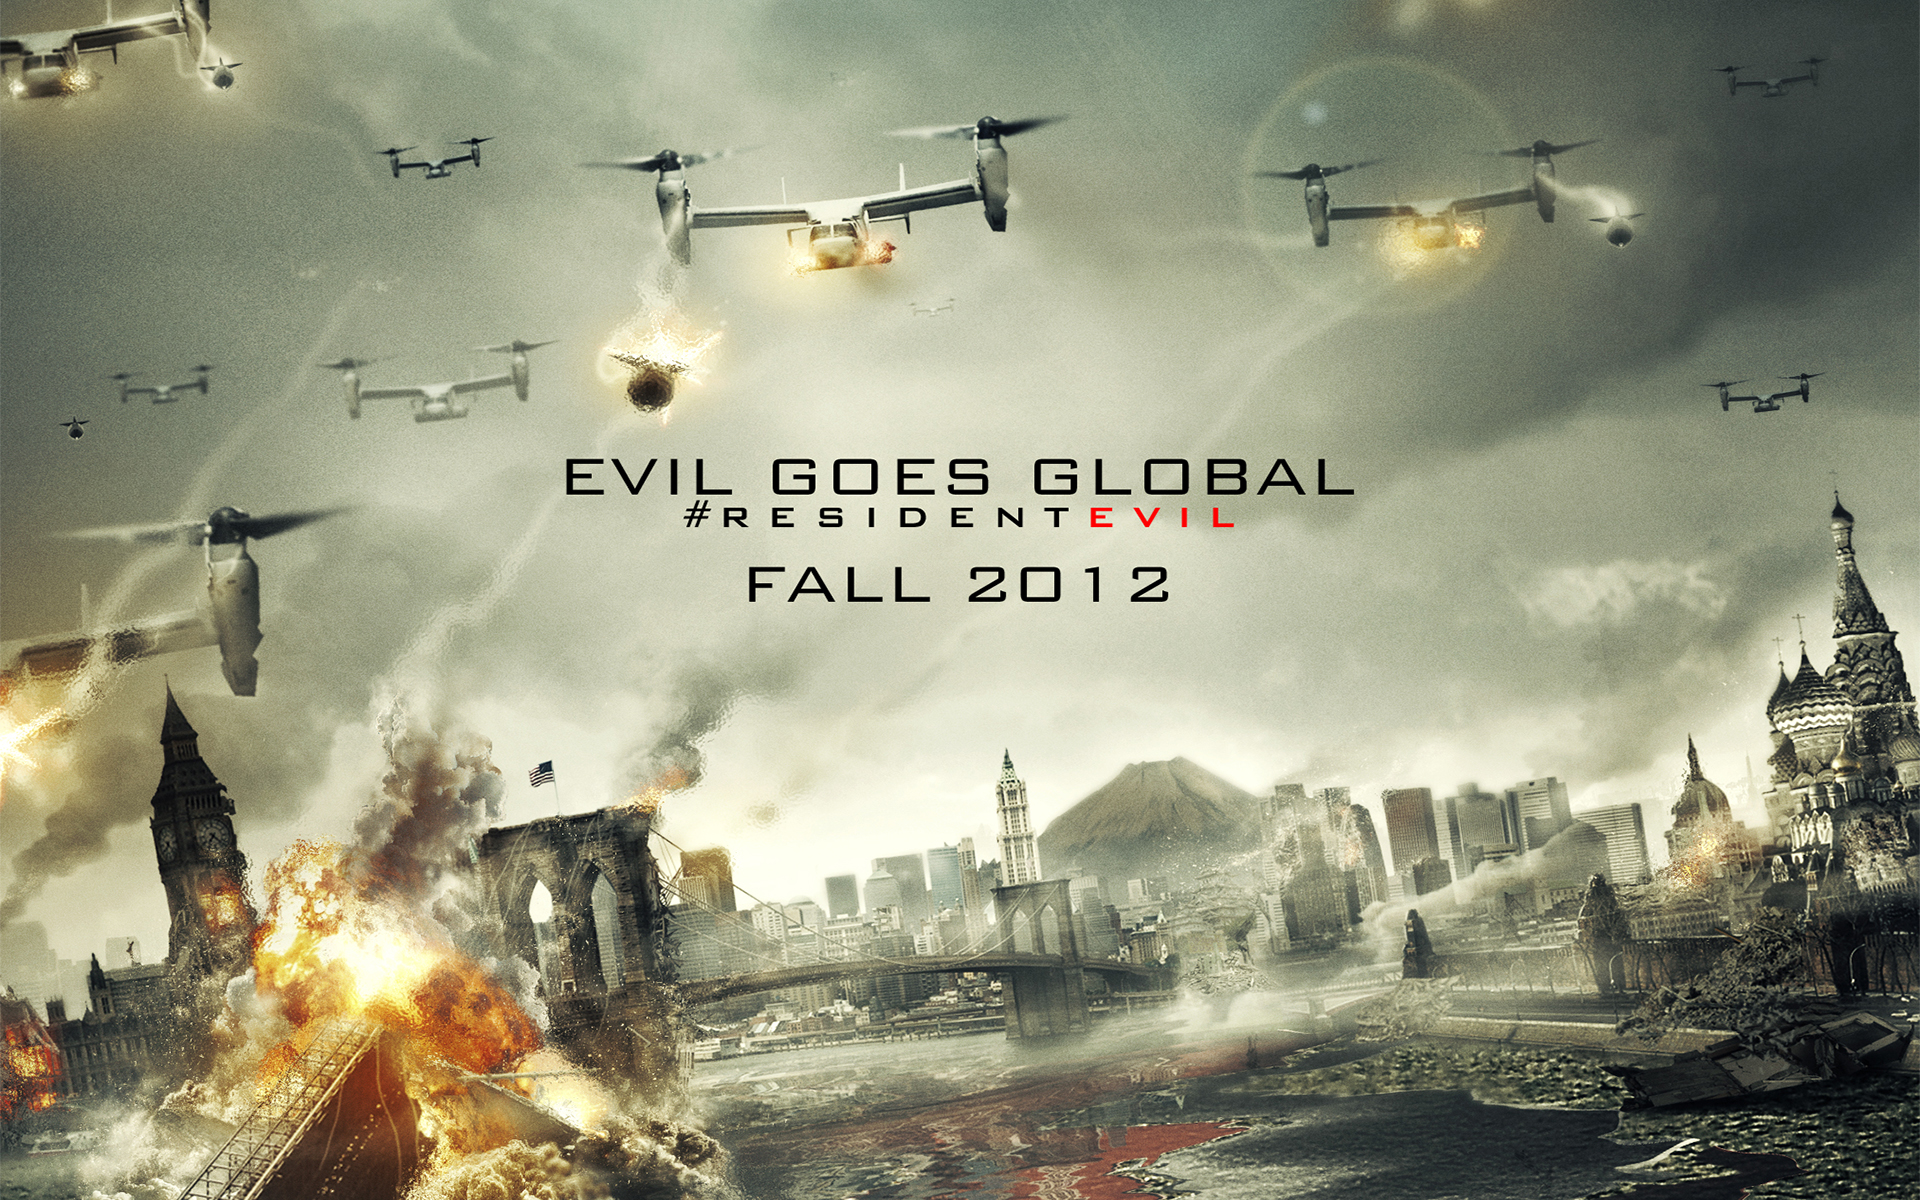 Resident Evil Retribution 2012 wallpaper download